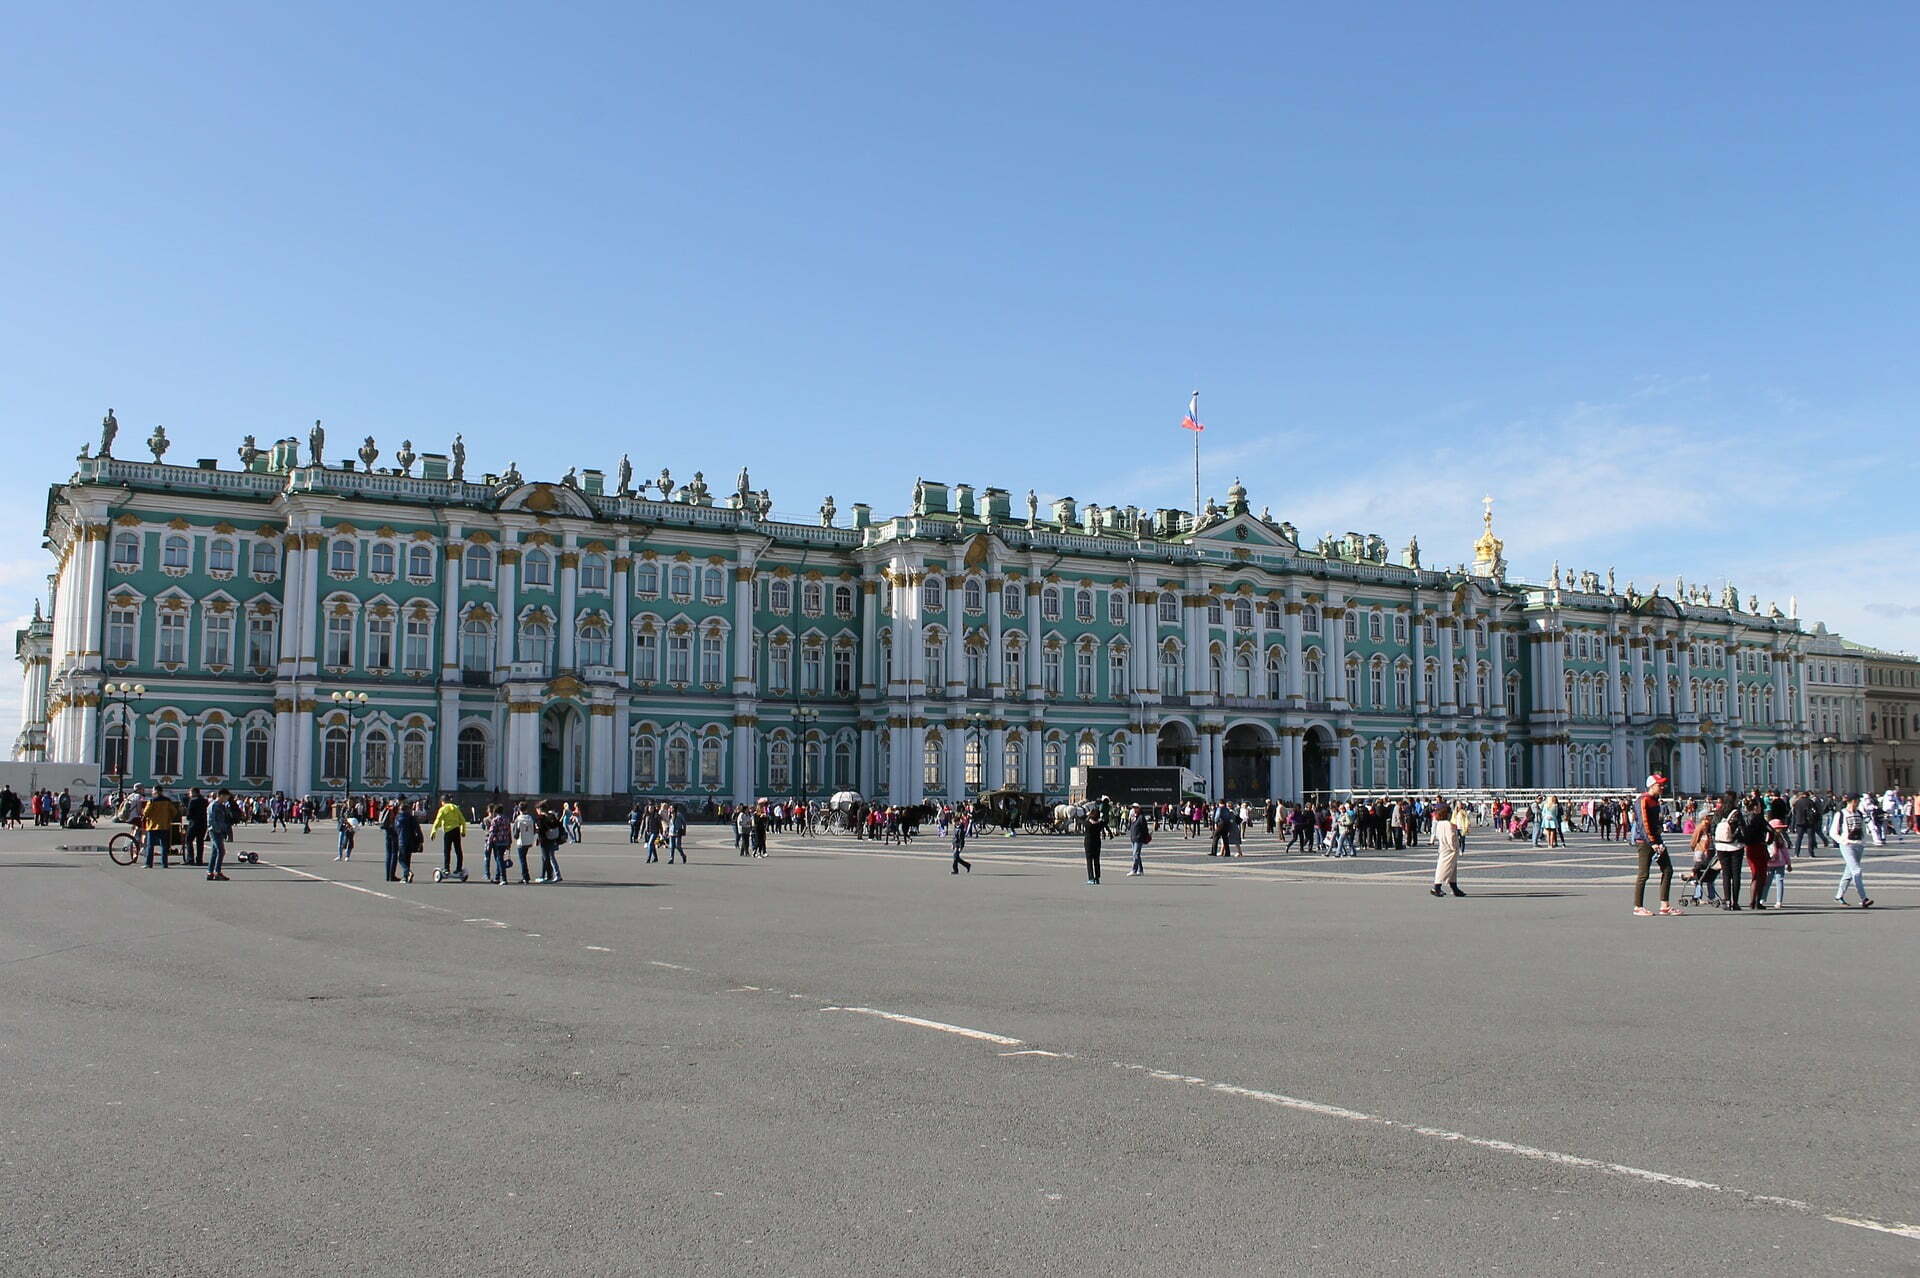 เที่ยวรัสเซีย เซนต์ปีเตอร์สเบิร์ก พระราชวังฤดูหนาว Hermitage Museum